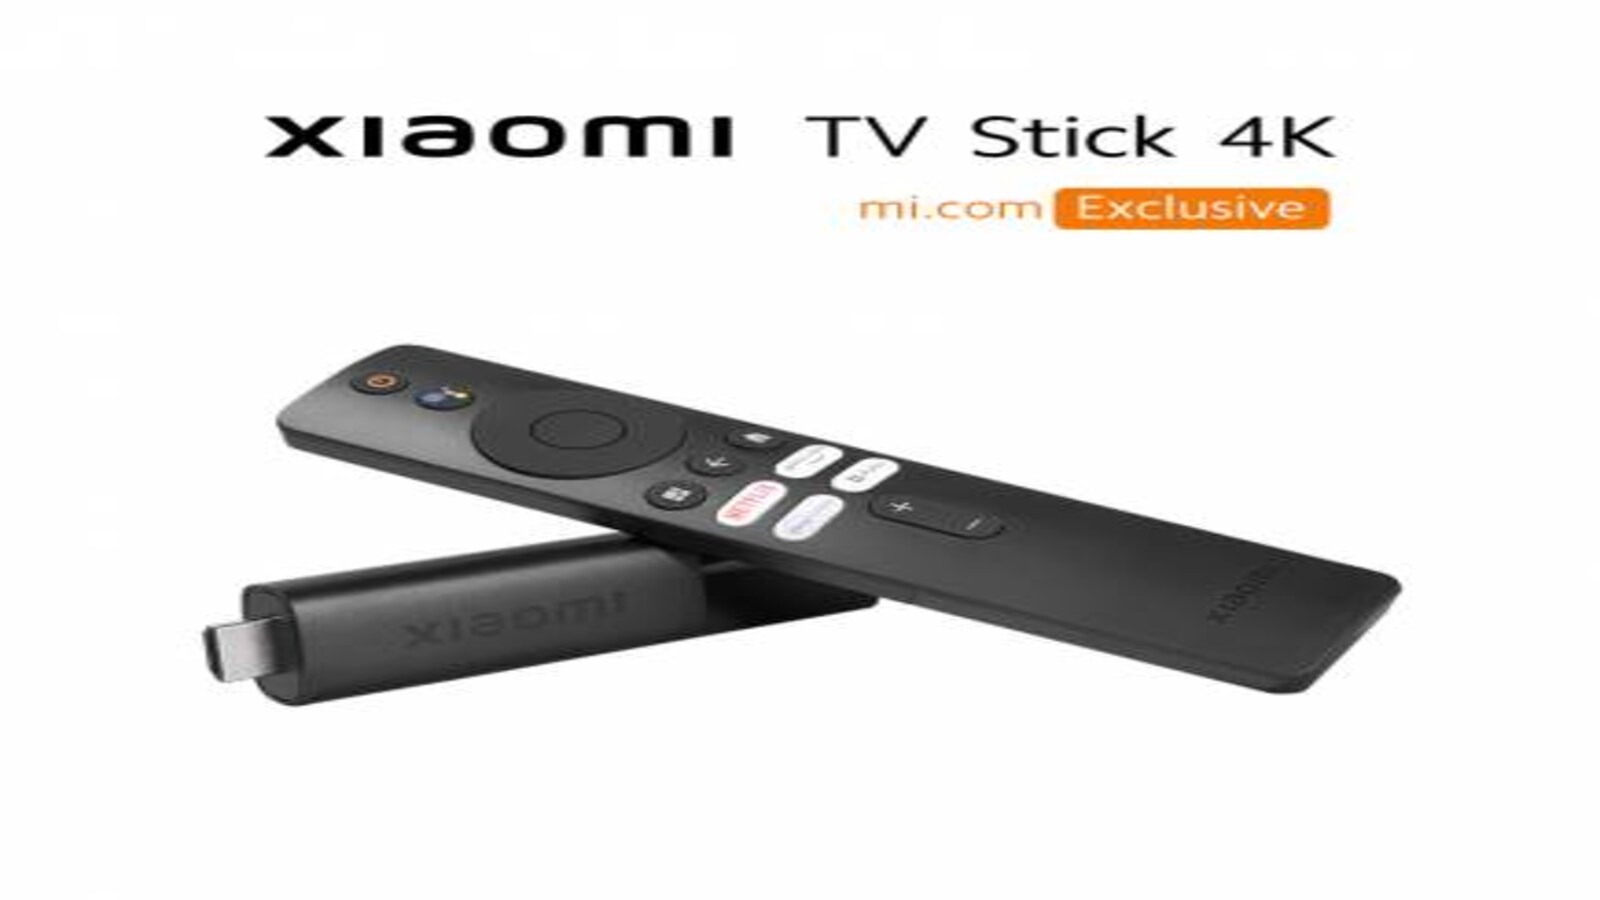 Xiaomi finally unveils its Mi TV Stick